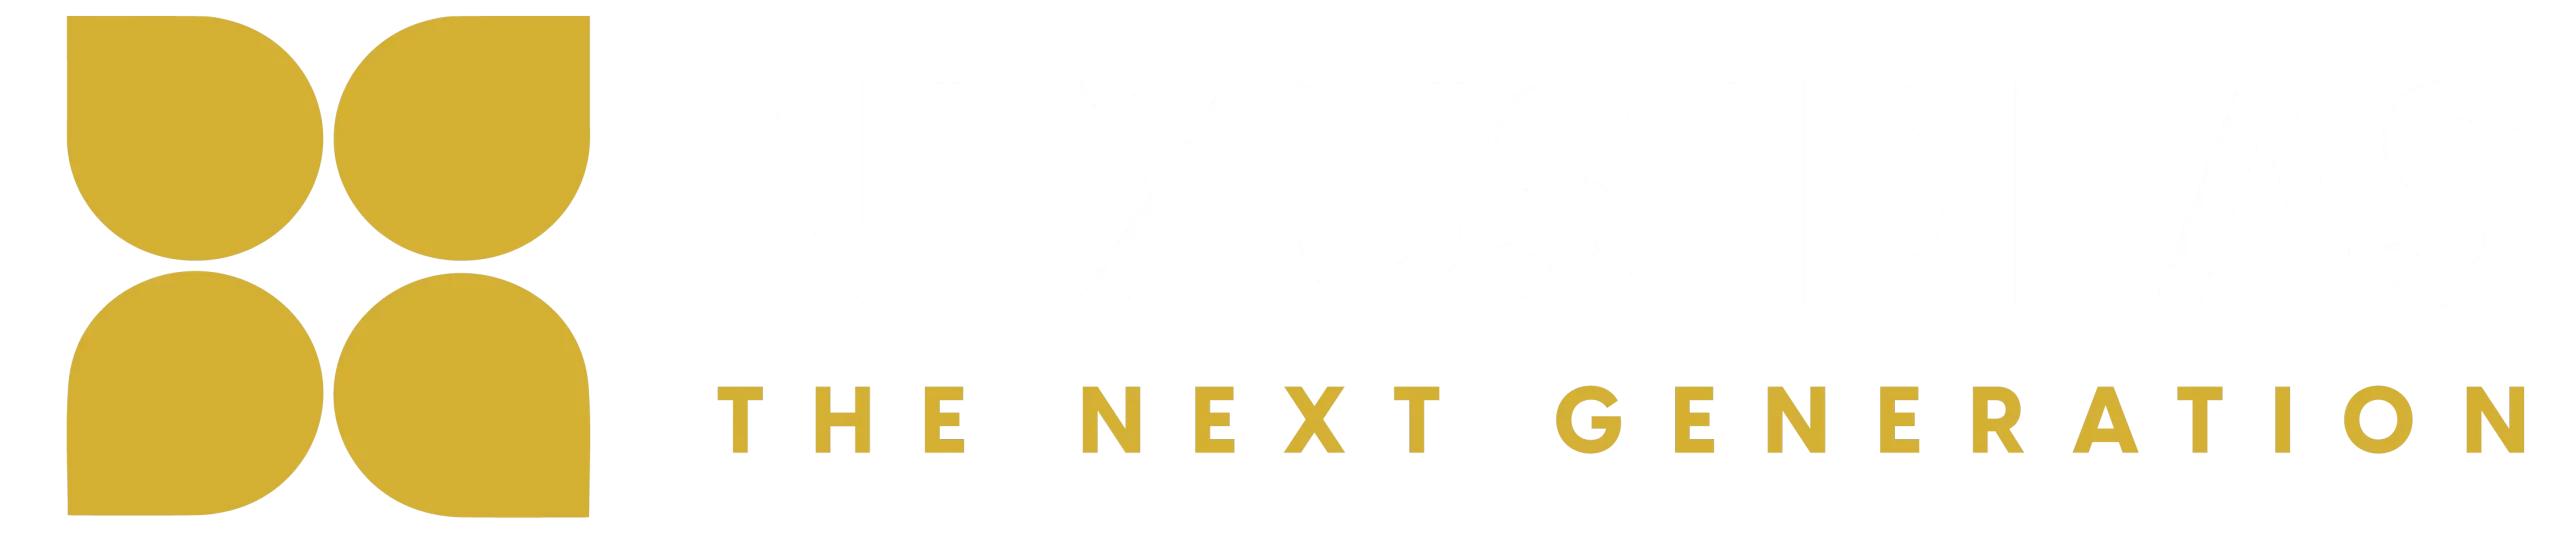 Nexus Ideas